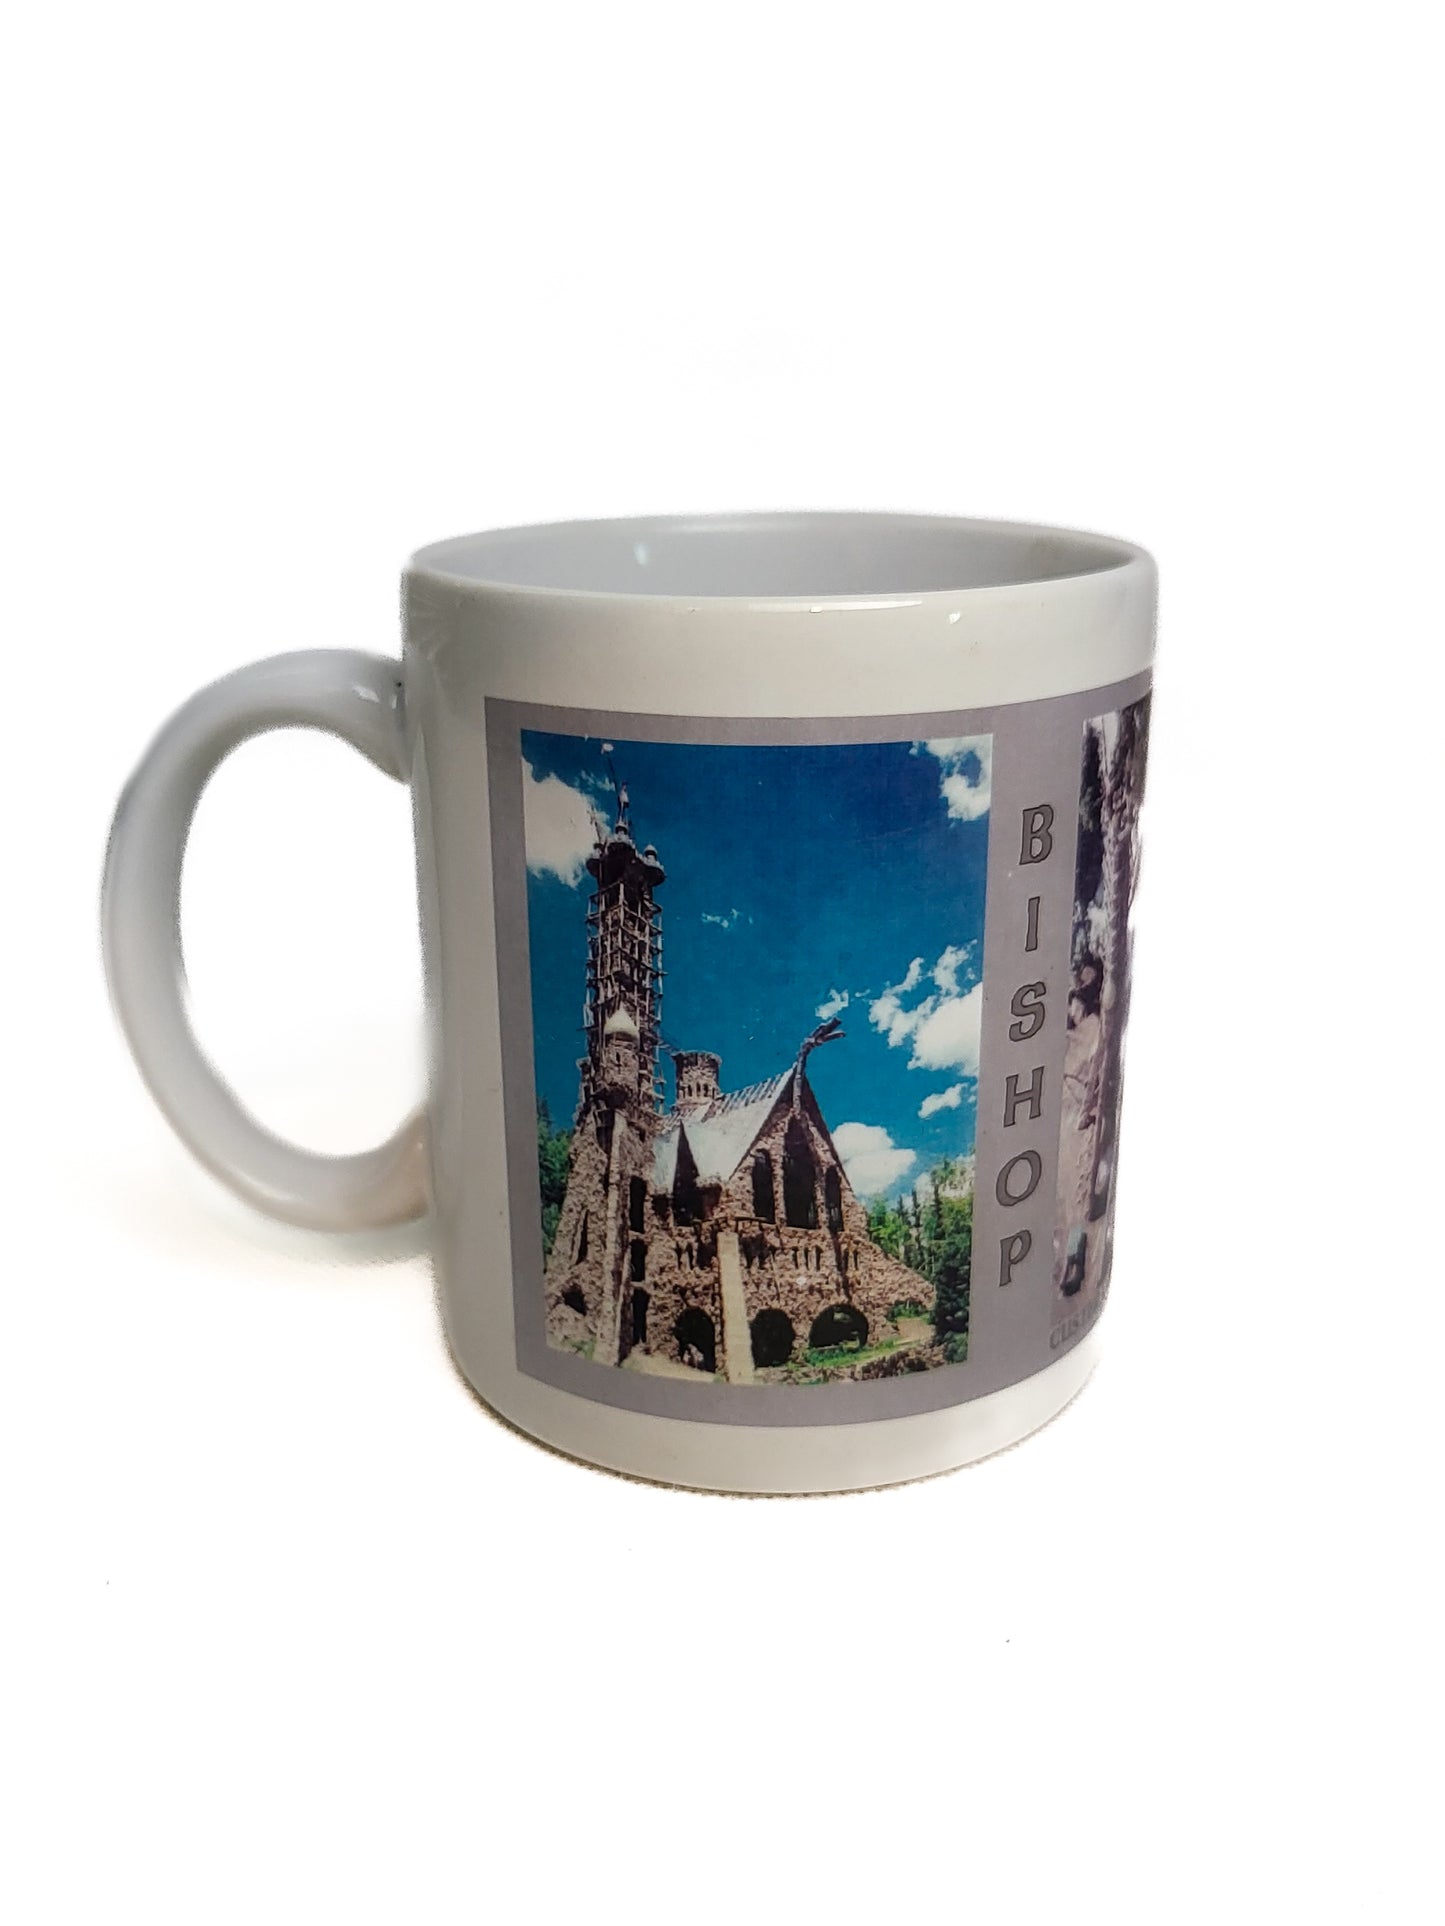 LIMITED EDITION! Bishop Castle Mug (1990s)